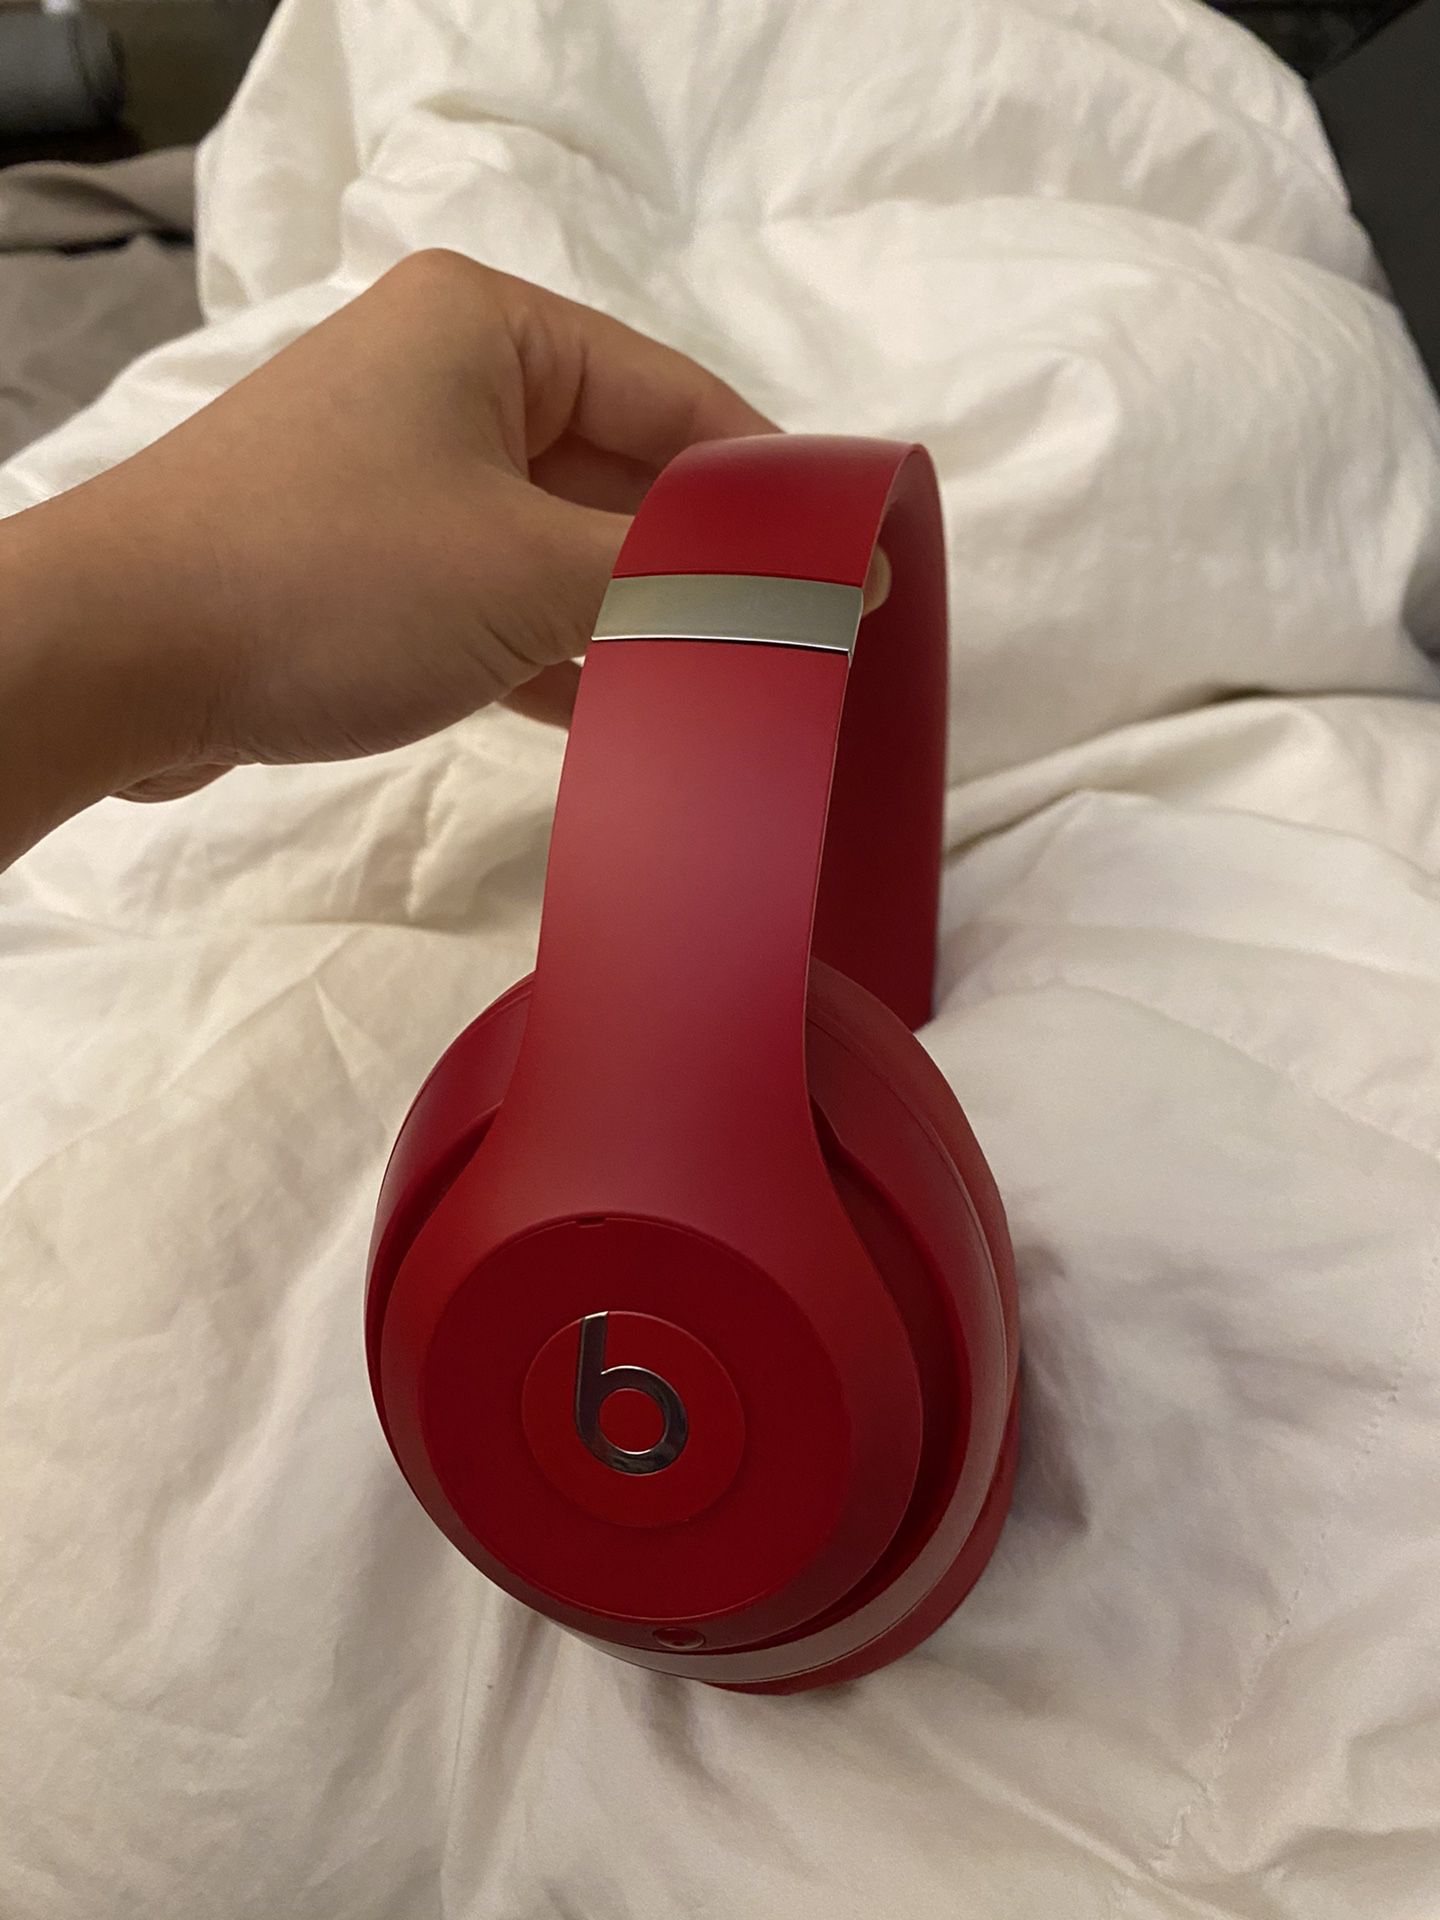 Red Beats Studio 3 Wireless Headphones